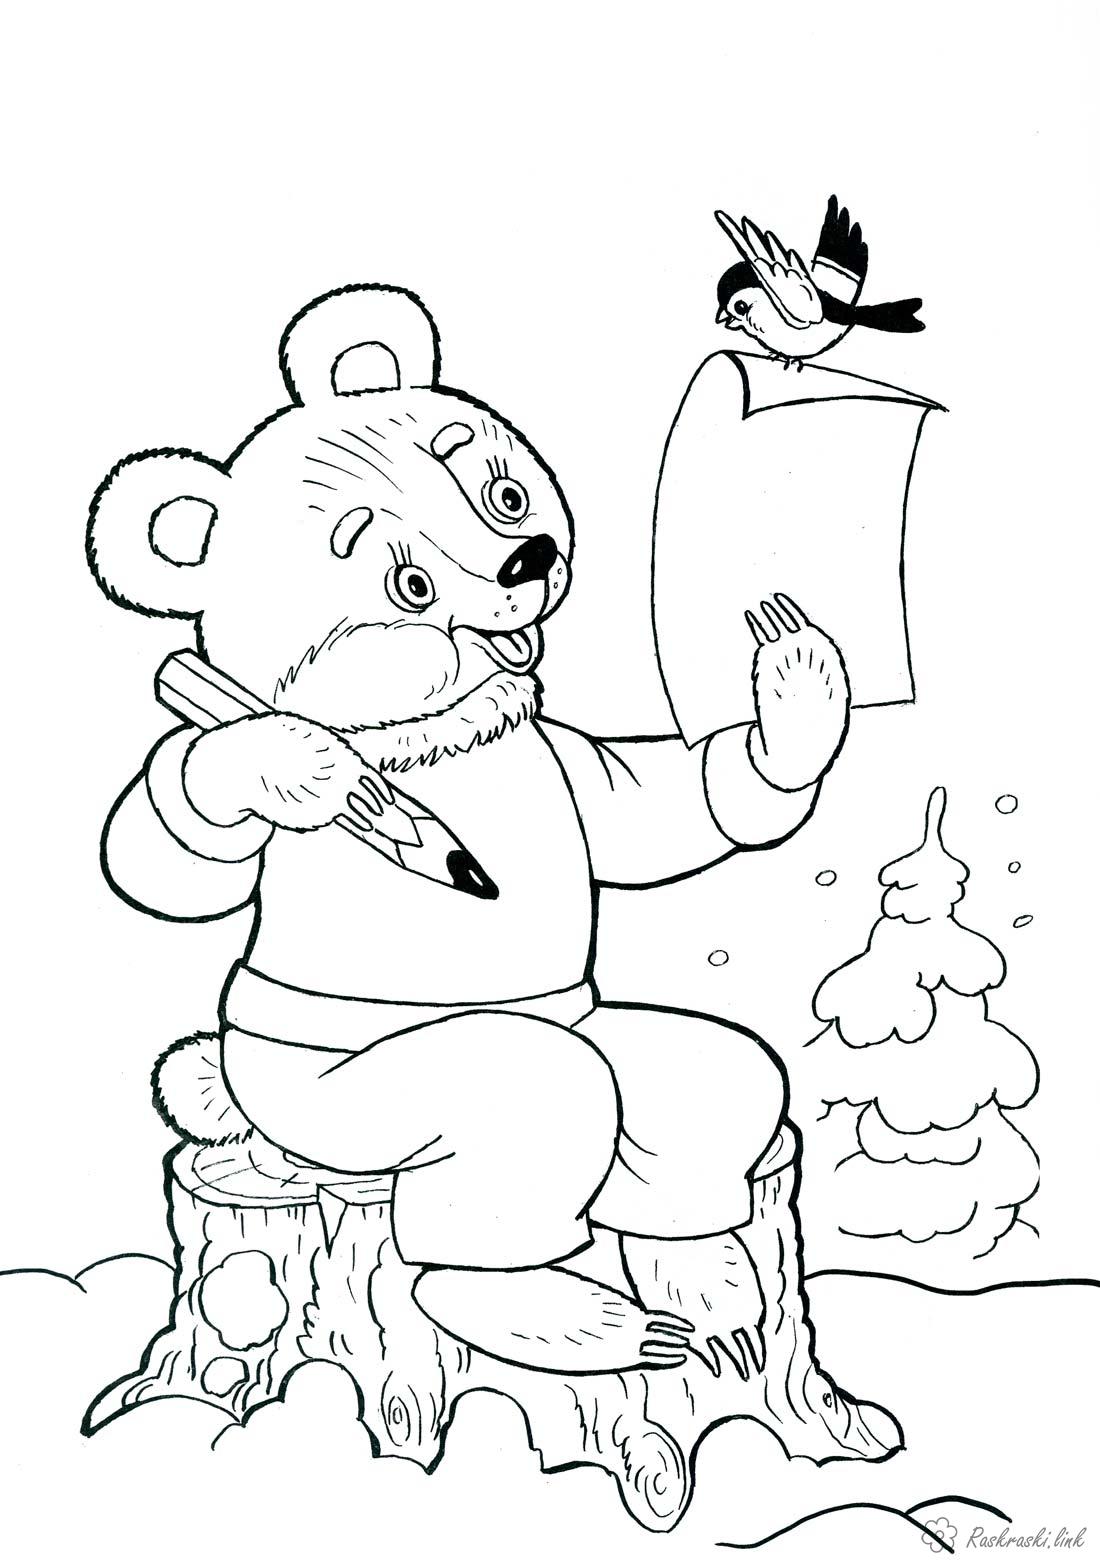 Розмальовки розмальовка дитяча новорічна розфарбування, ведмедик пише лист Діду Морозу